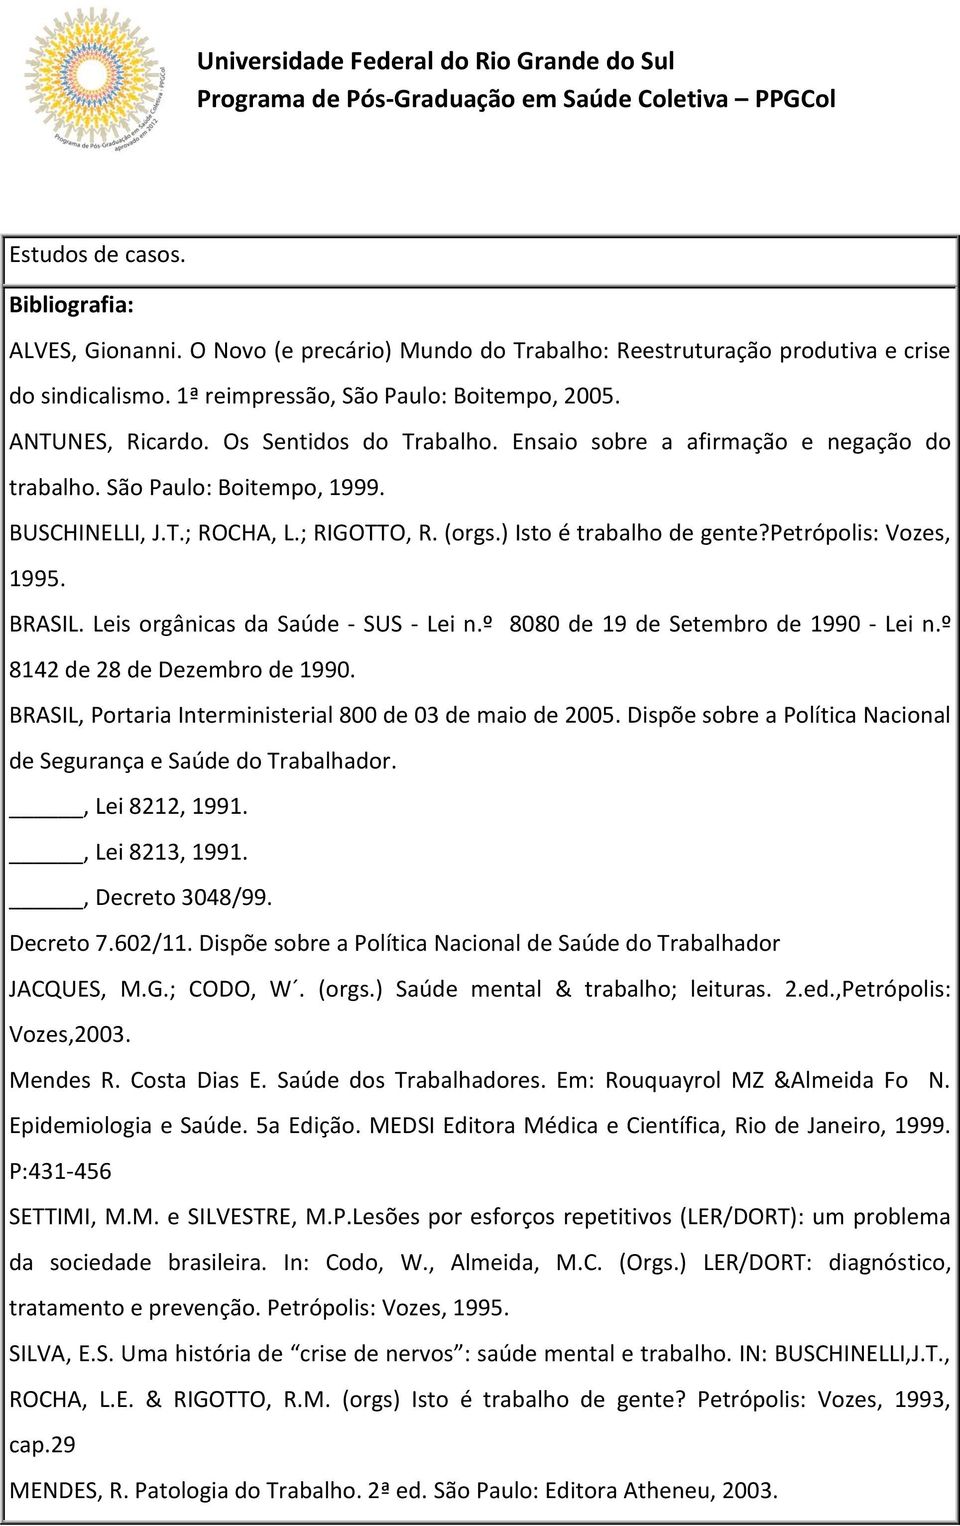 BRASIL. Leis orgânicas da Saúde - SUS - Lei n.º 8080 de 19 de Setembro de 1990 - Lei n.º 8142 de 28 de Dezembro de 1990. BRASIL, Portaria Interministerial 800 de 03 de maio de 2005.